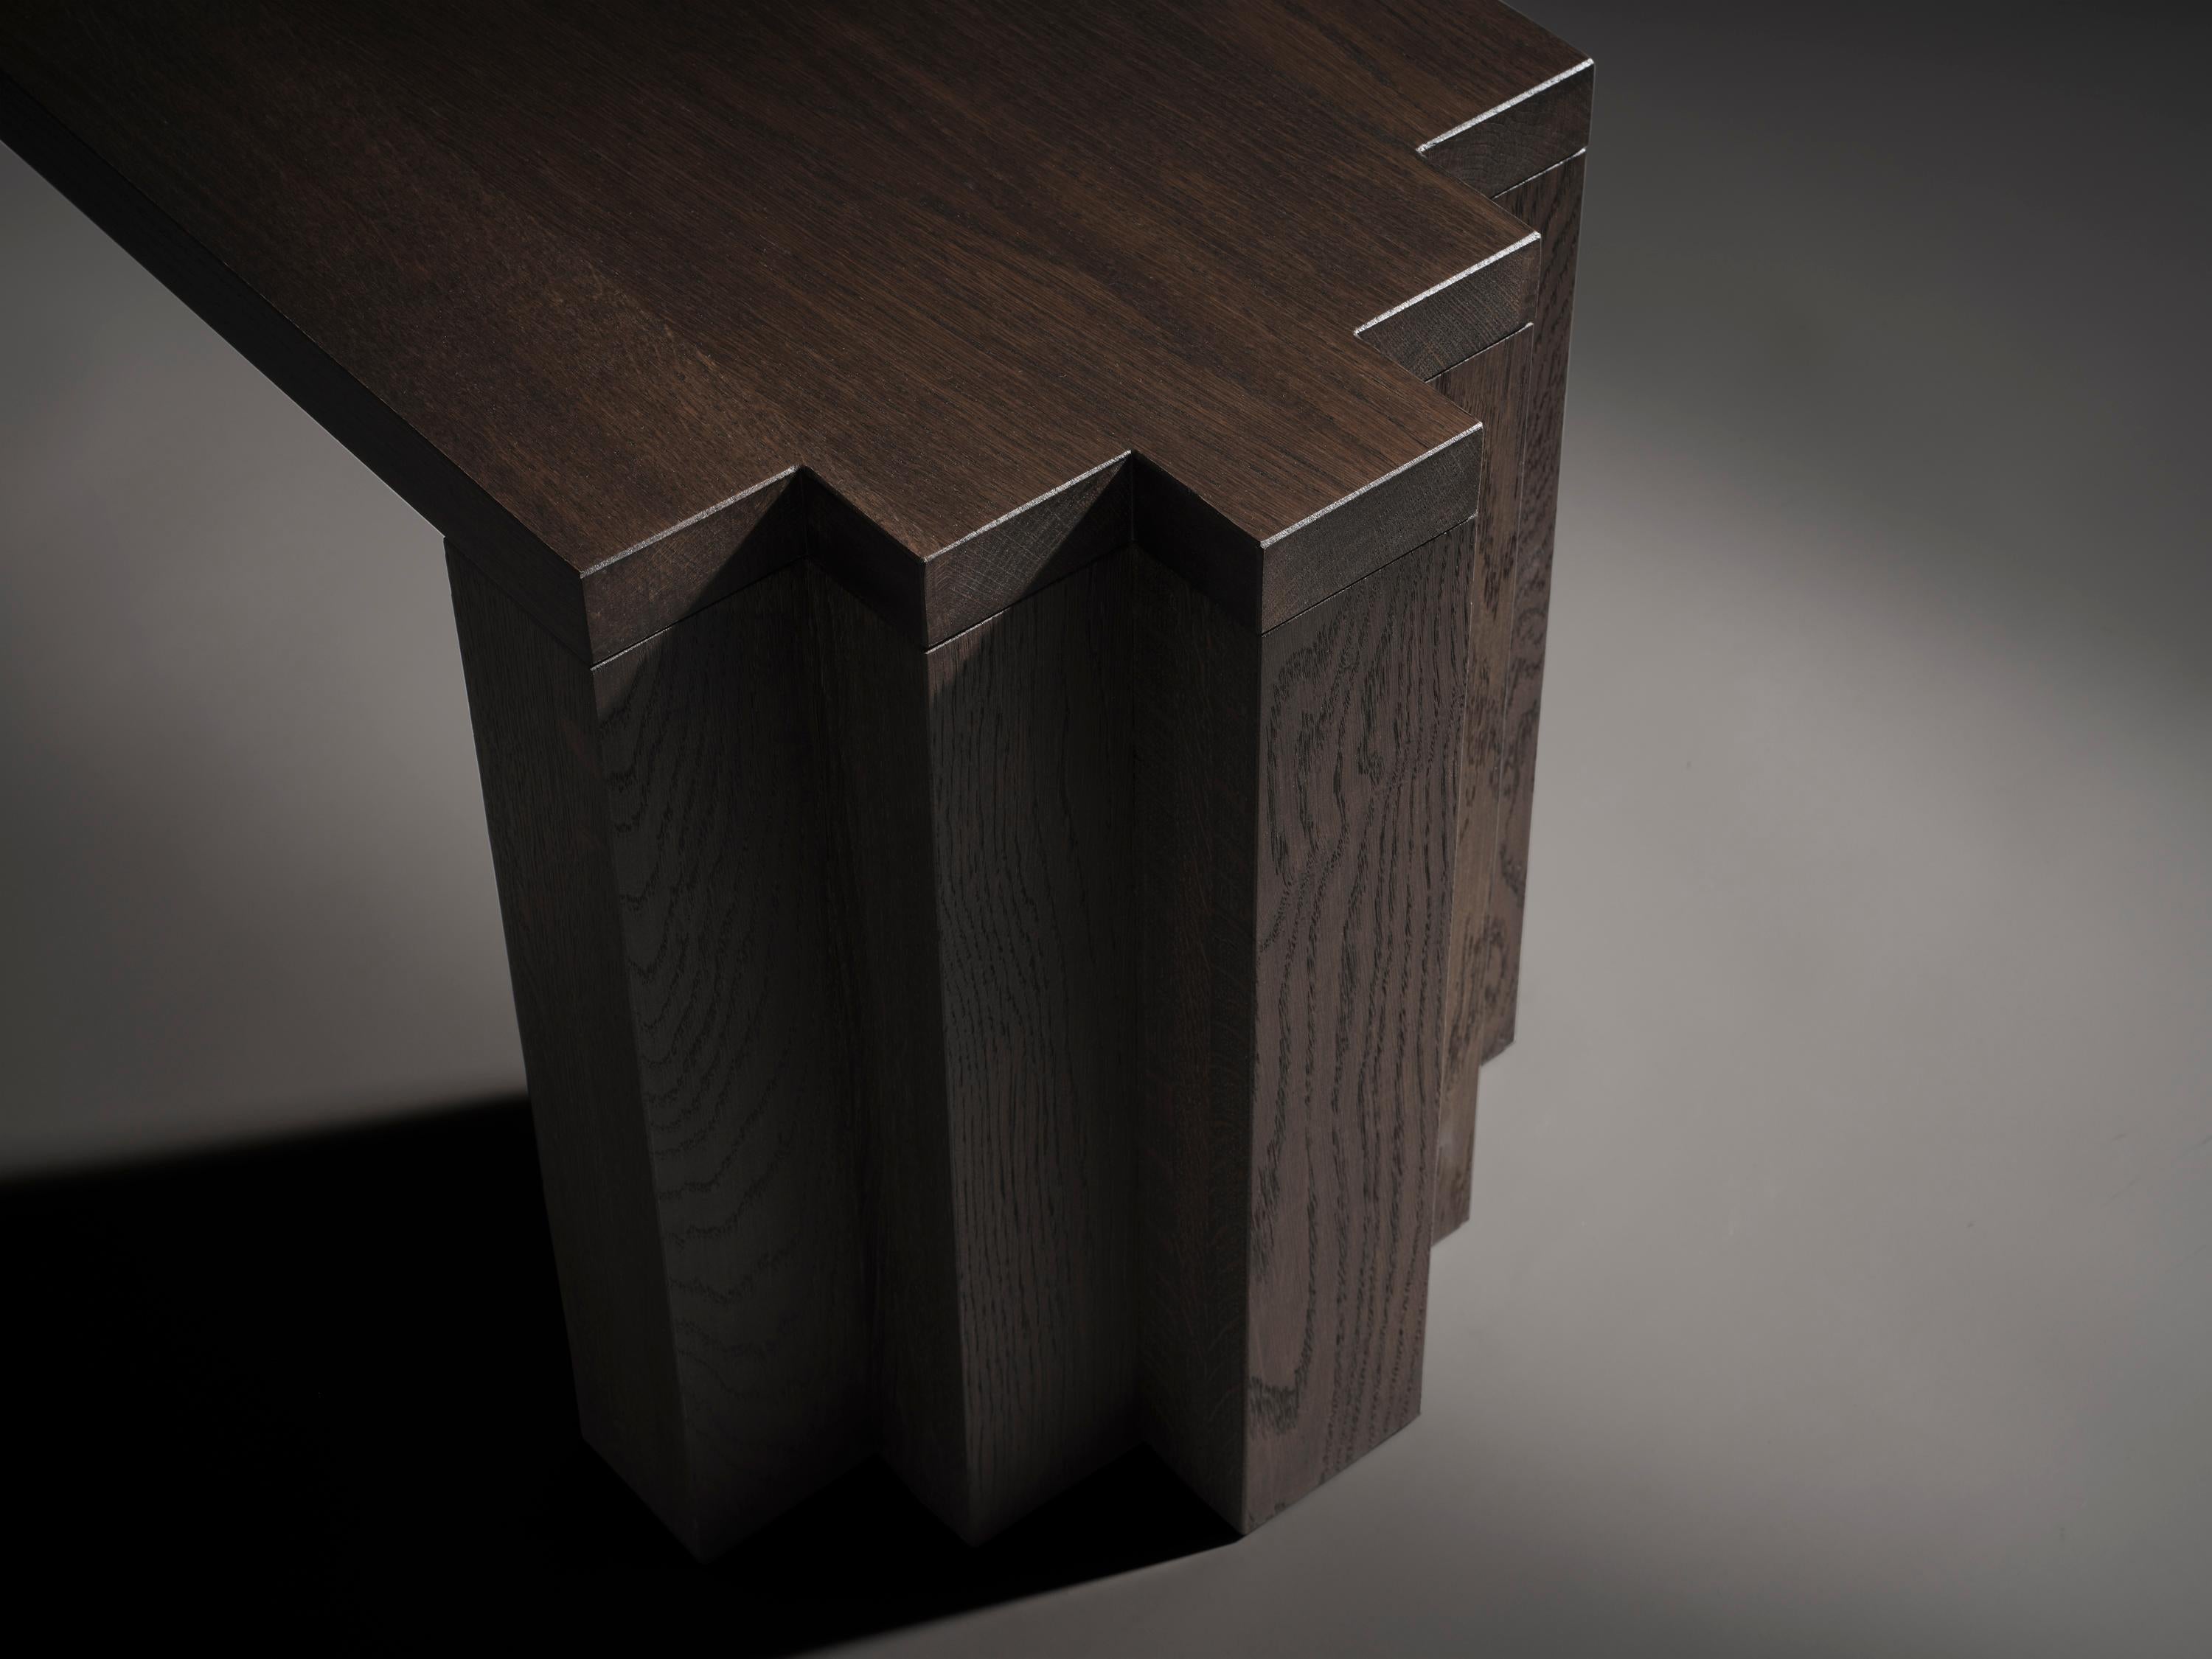 Die Cadence Bench ist eine Anlehnung an den Brutalismus und die Architektur der Amsterdamer Schule und wird aus massivem Hartholz gefertigt. Die Bank wurde passend zum Esstisch Cadence entworfen, ist aber auch als separates Produkt erhältlich.